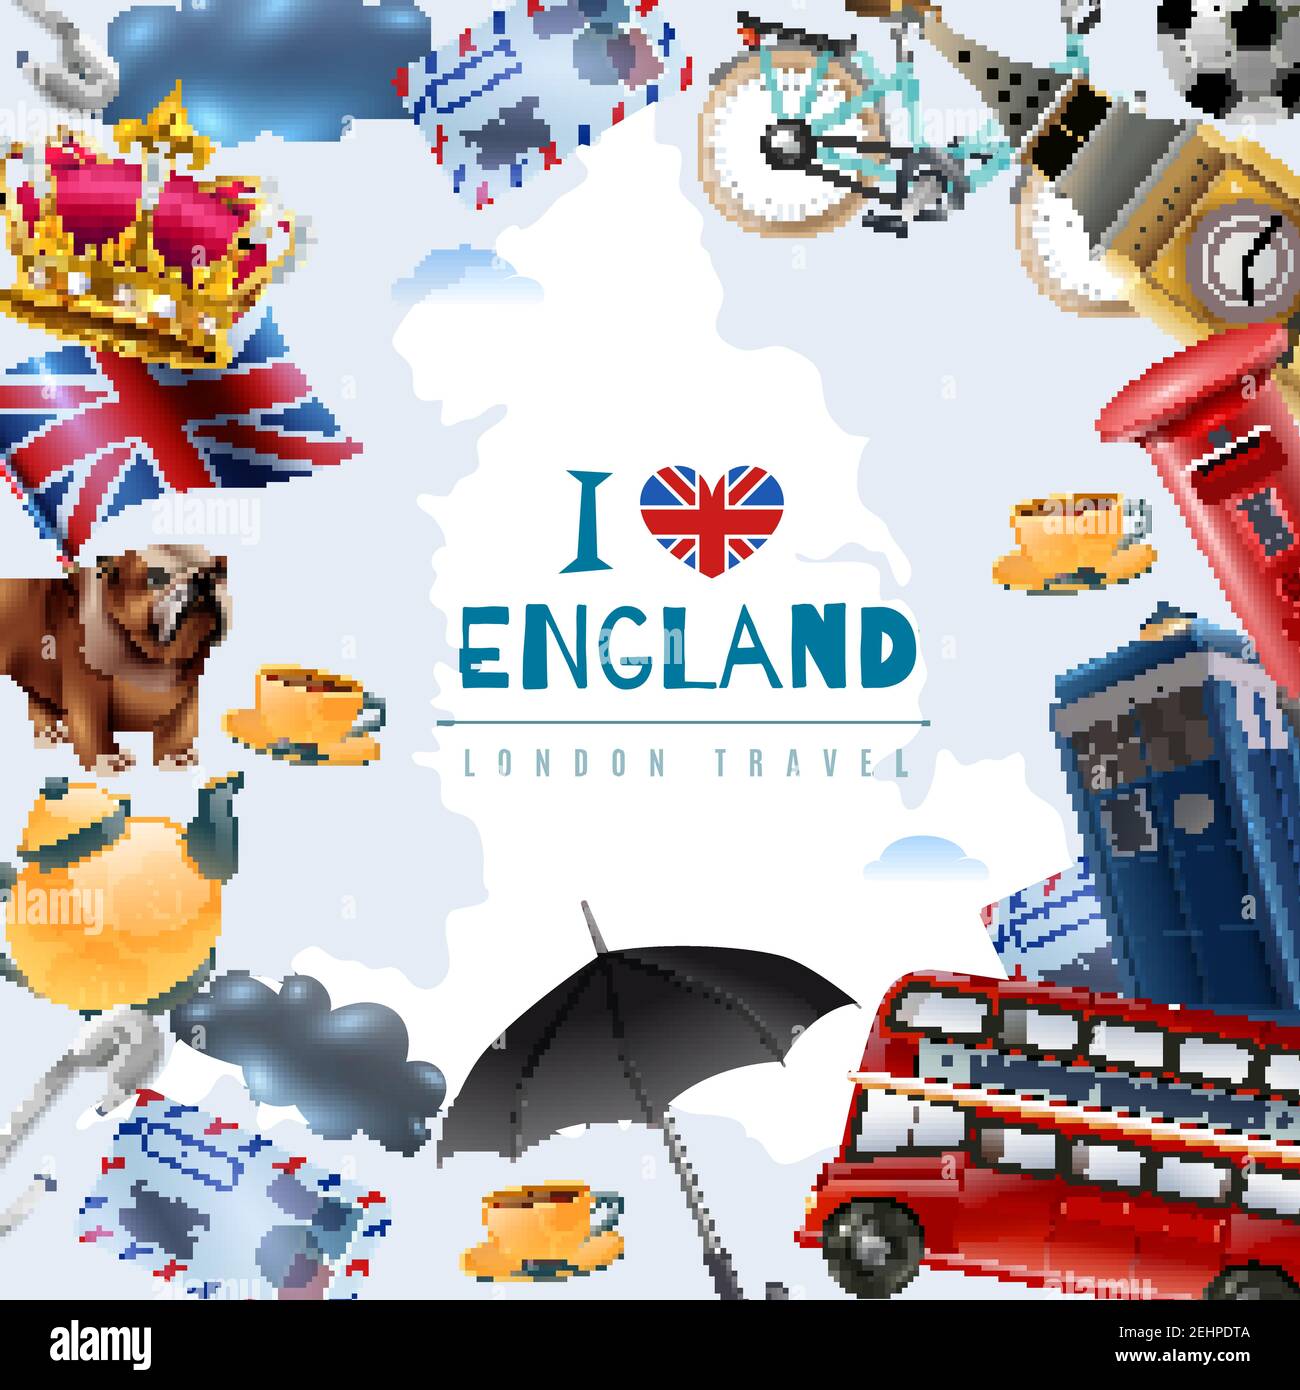 Inghilterra london Travel frame sfondo con collage di immagini piatte con elementi stereotipati e illustrazioni vettoriali di testo modificabili Illustrazione Vettoriale